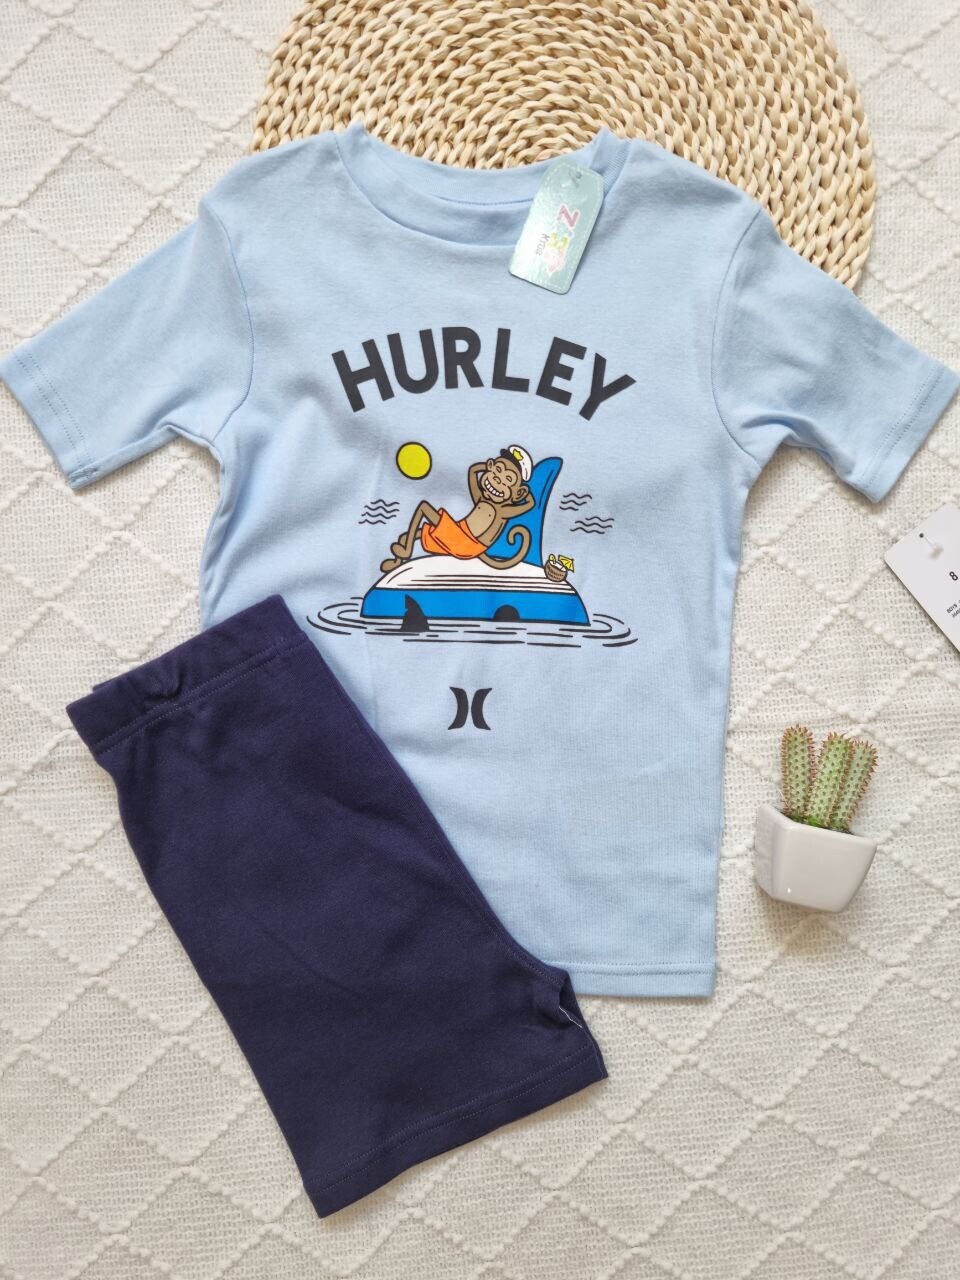 Set pijama Hurley, camiseta celeste + pantaloneta azul, 8 años